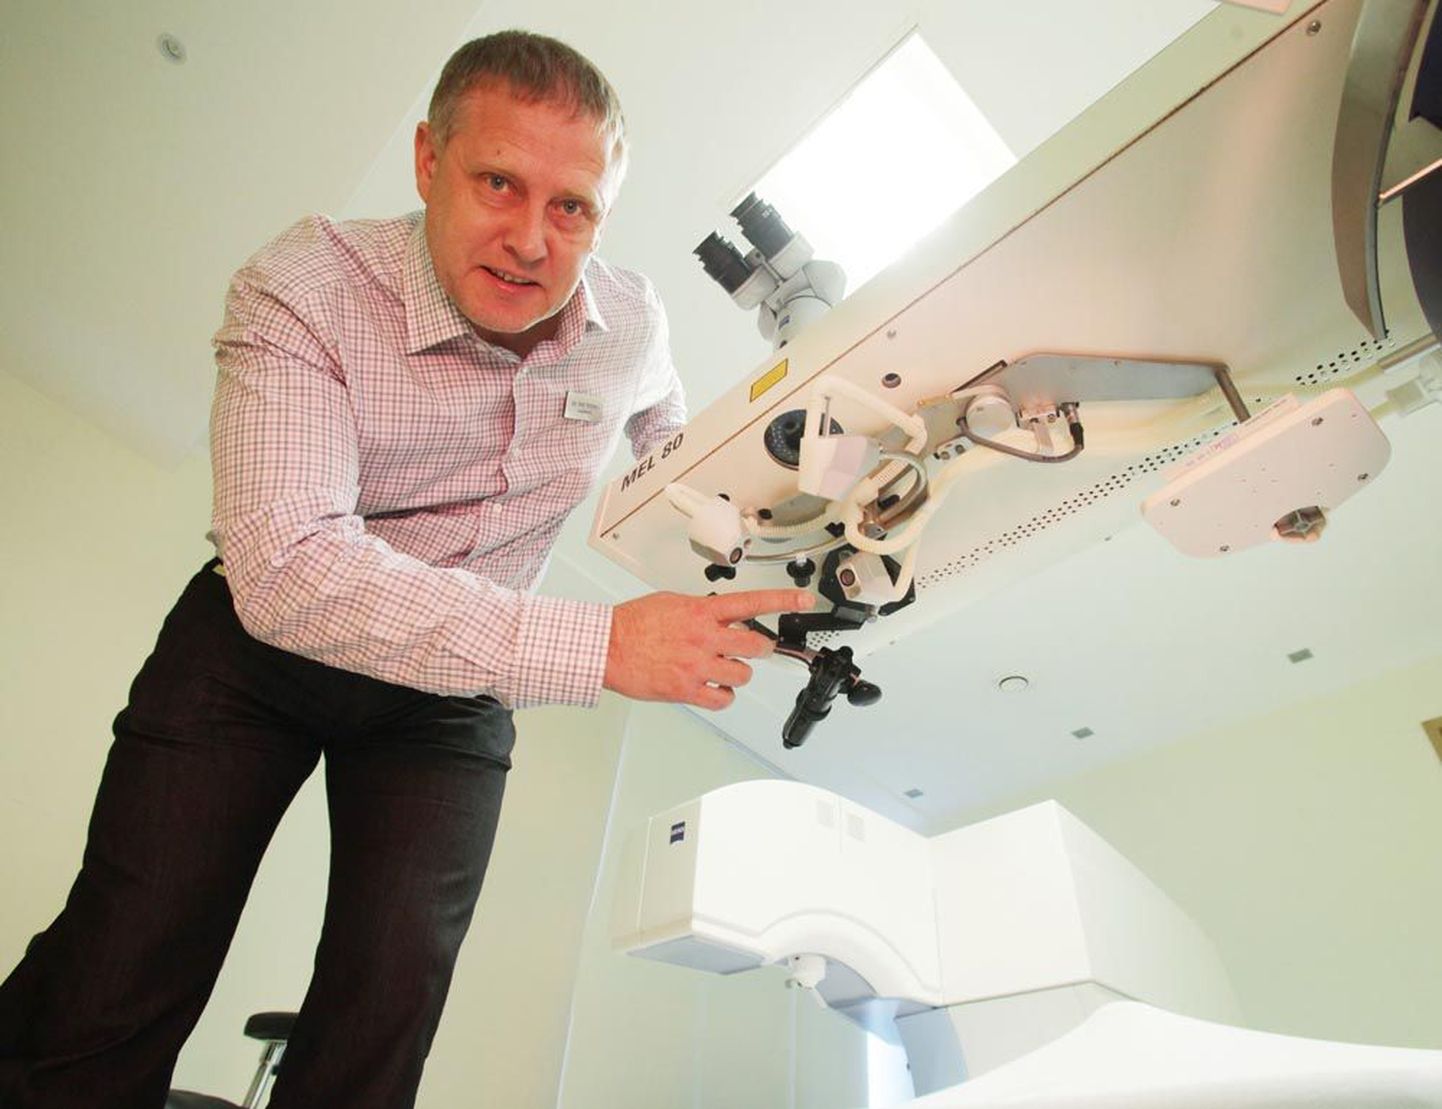 ReFocus Silmakeskuse silmakirurg Pait Teesalu on teinud kümneid tuhandeid silmaoperatsioone.